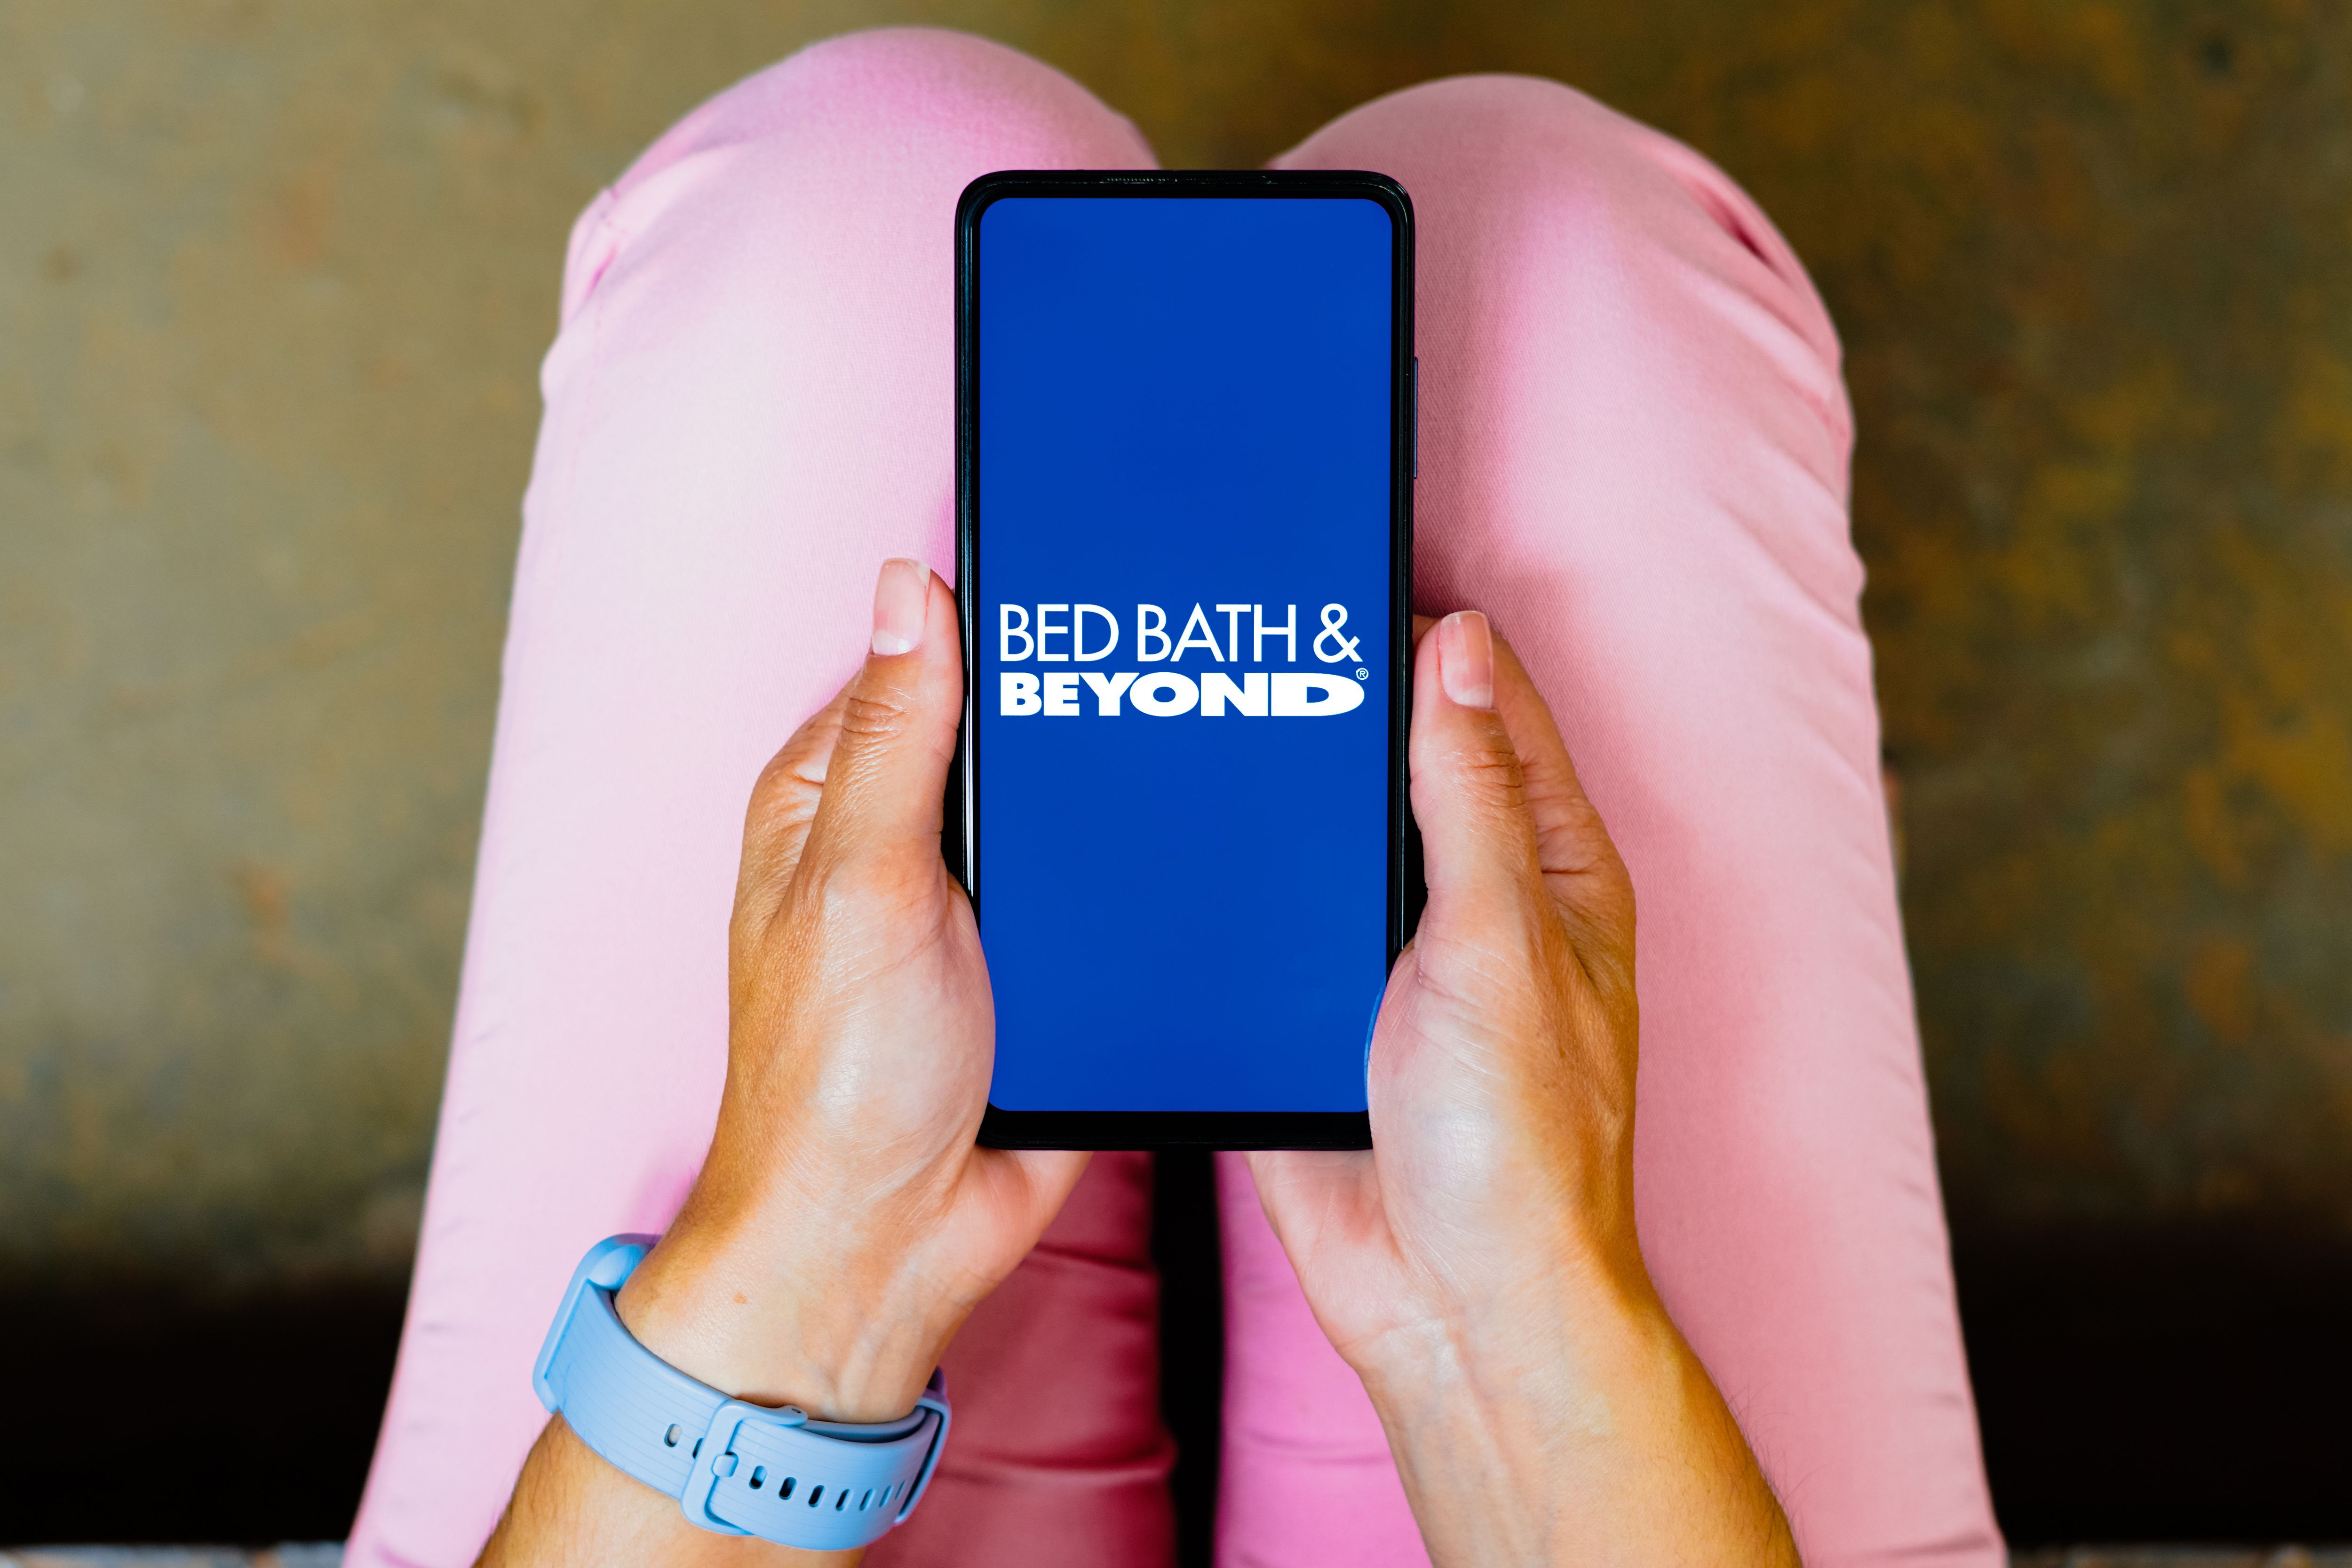 Online retailer Overstock rebranding as Bed Bath & Beyond